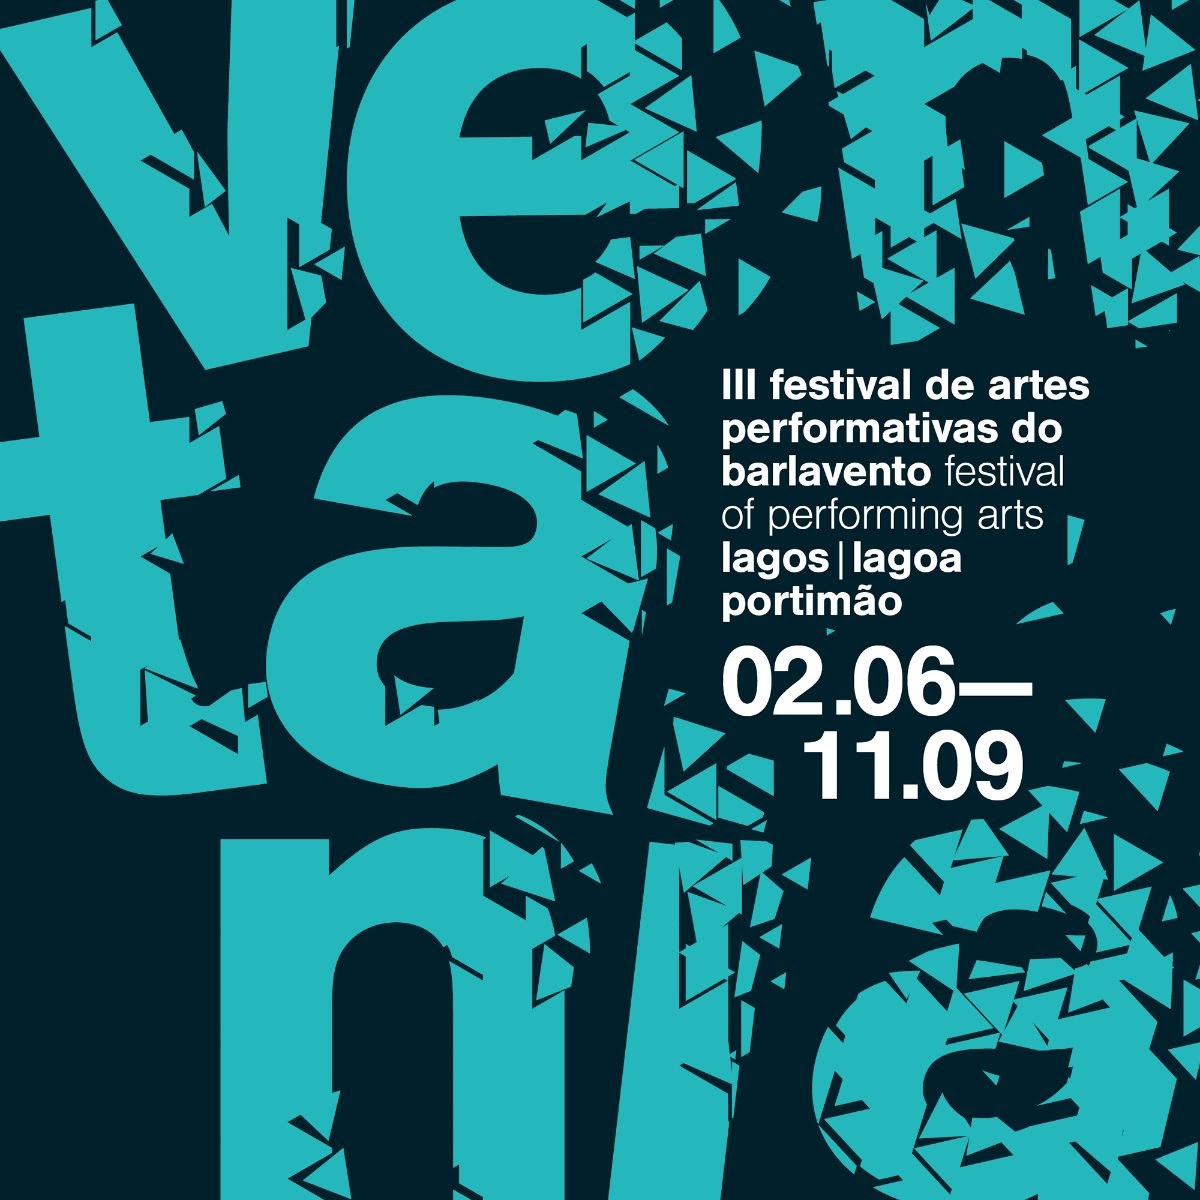 Revelada a programação da 3.ª edição do Festival VENTANIA que passará por Lagos